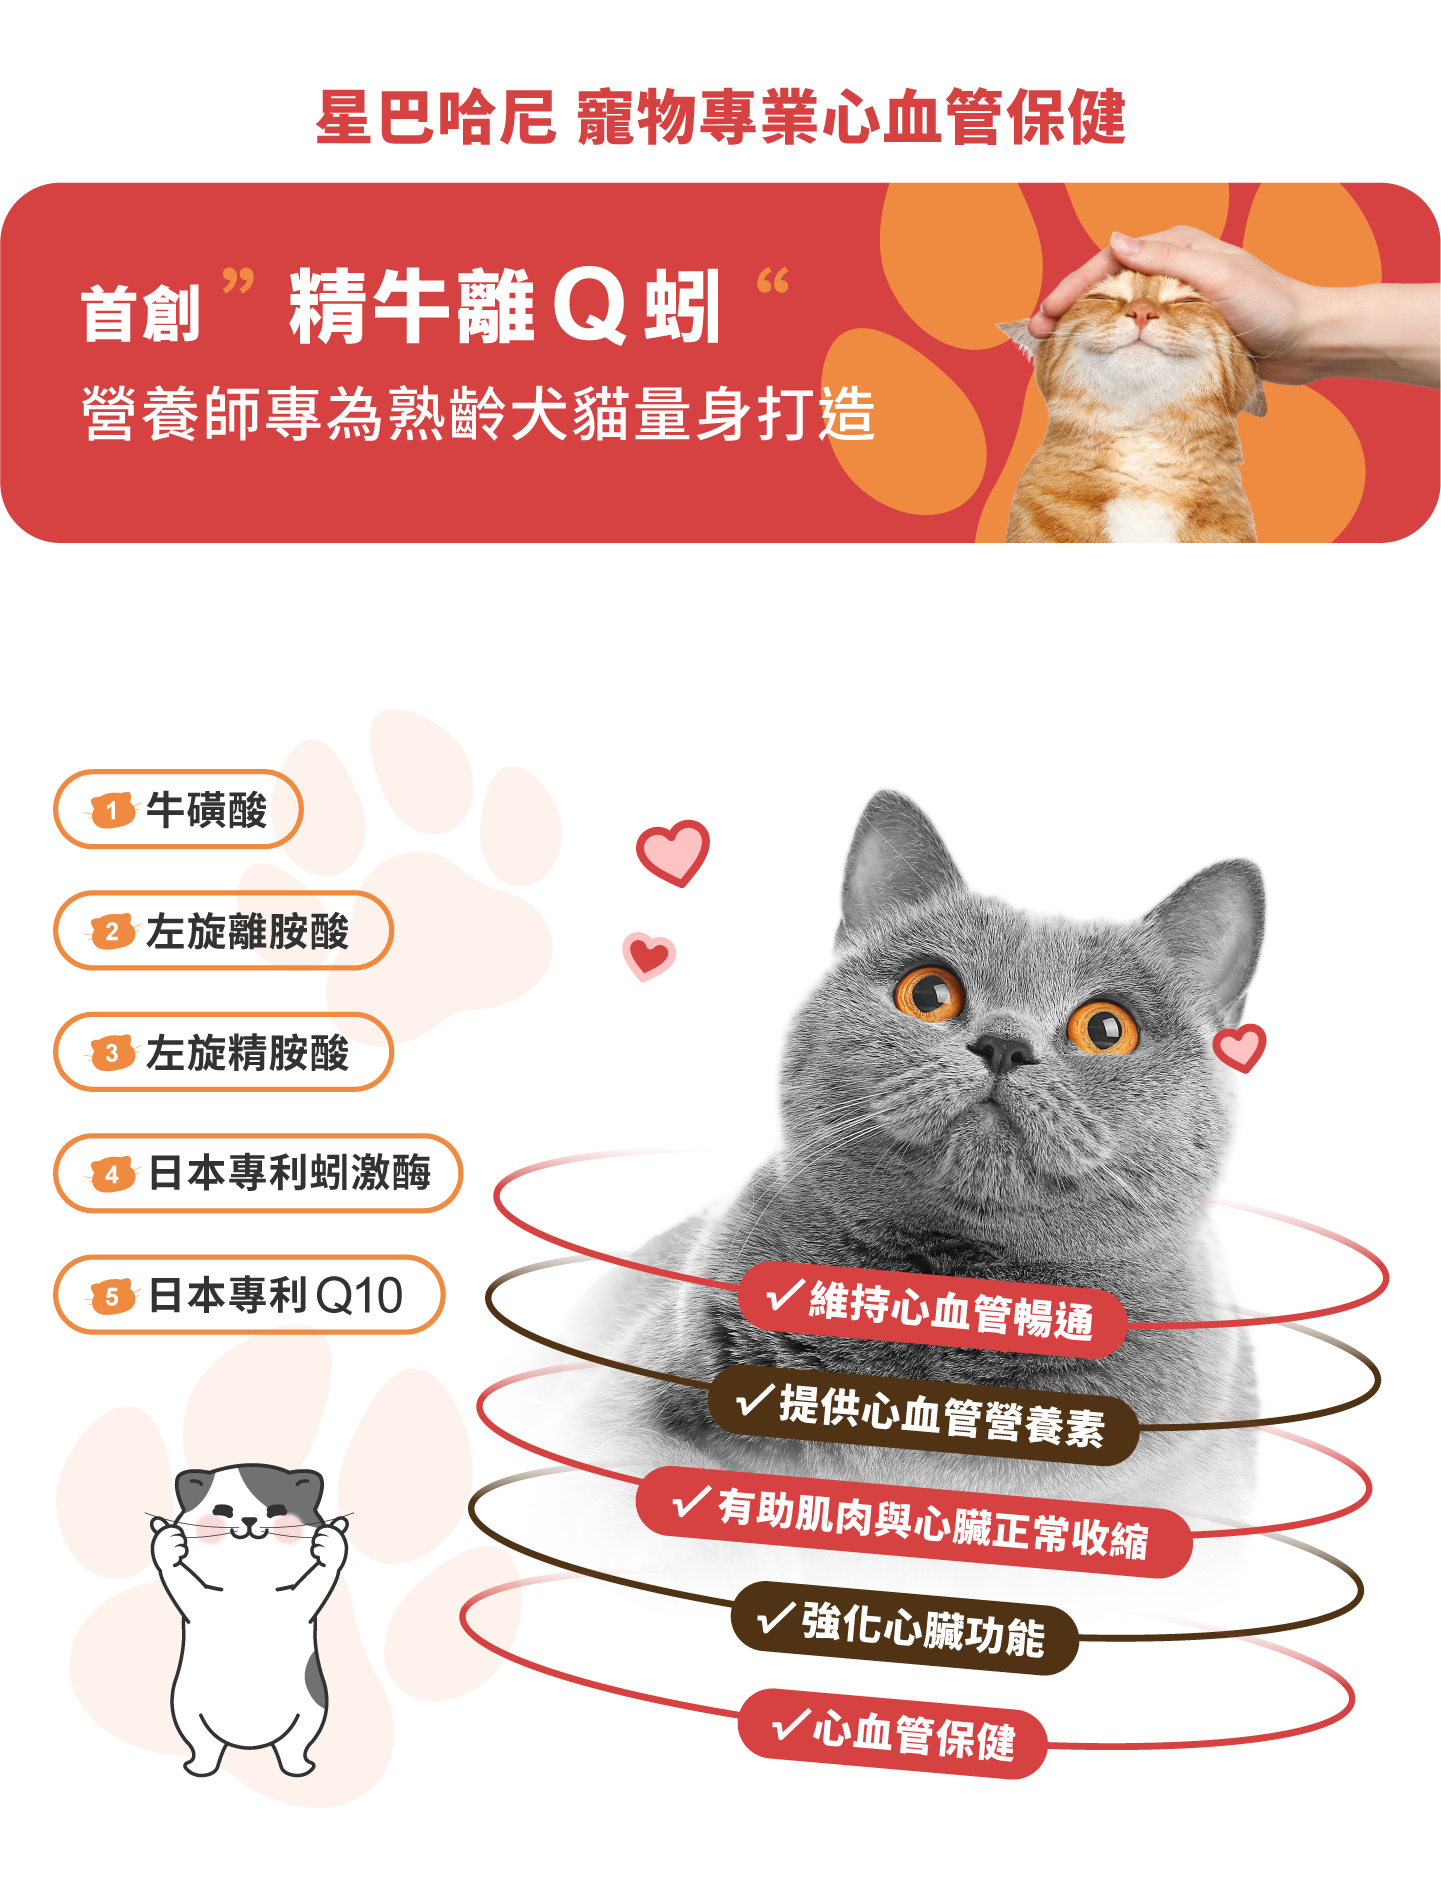 星巴哈尼貓用-寵物專業心血管保健